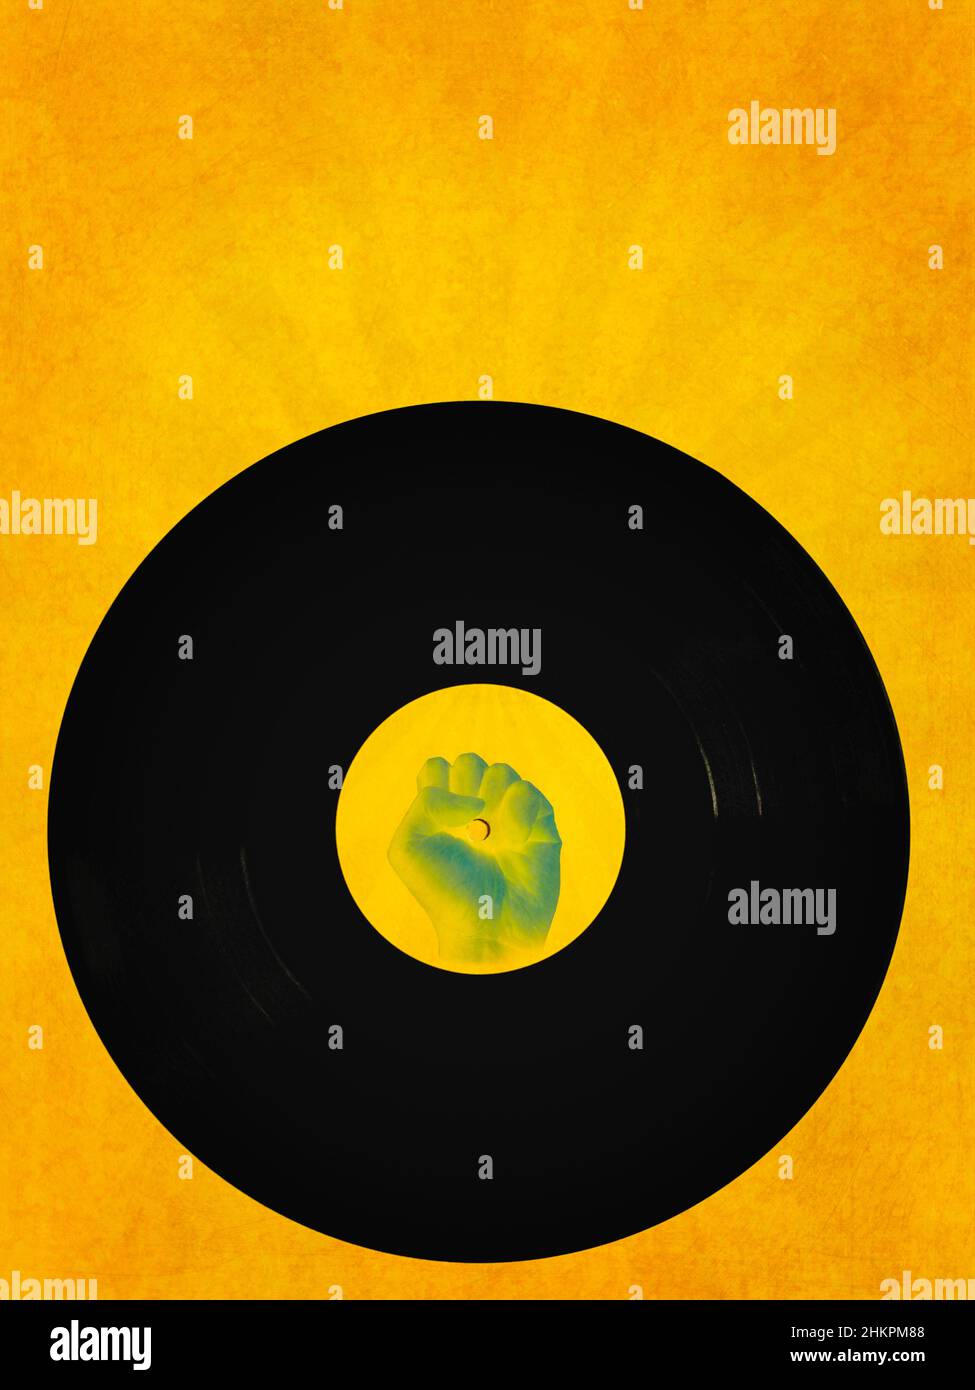 Immagine astratta del disco vinilico con etichetta pugnalata su sfondo giallo testurizzato con raggi Foto Stock